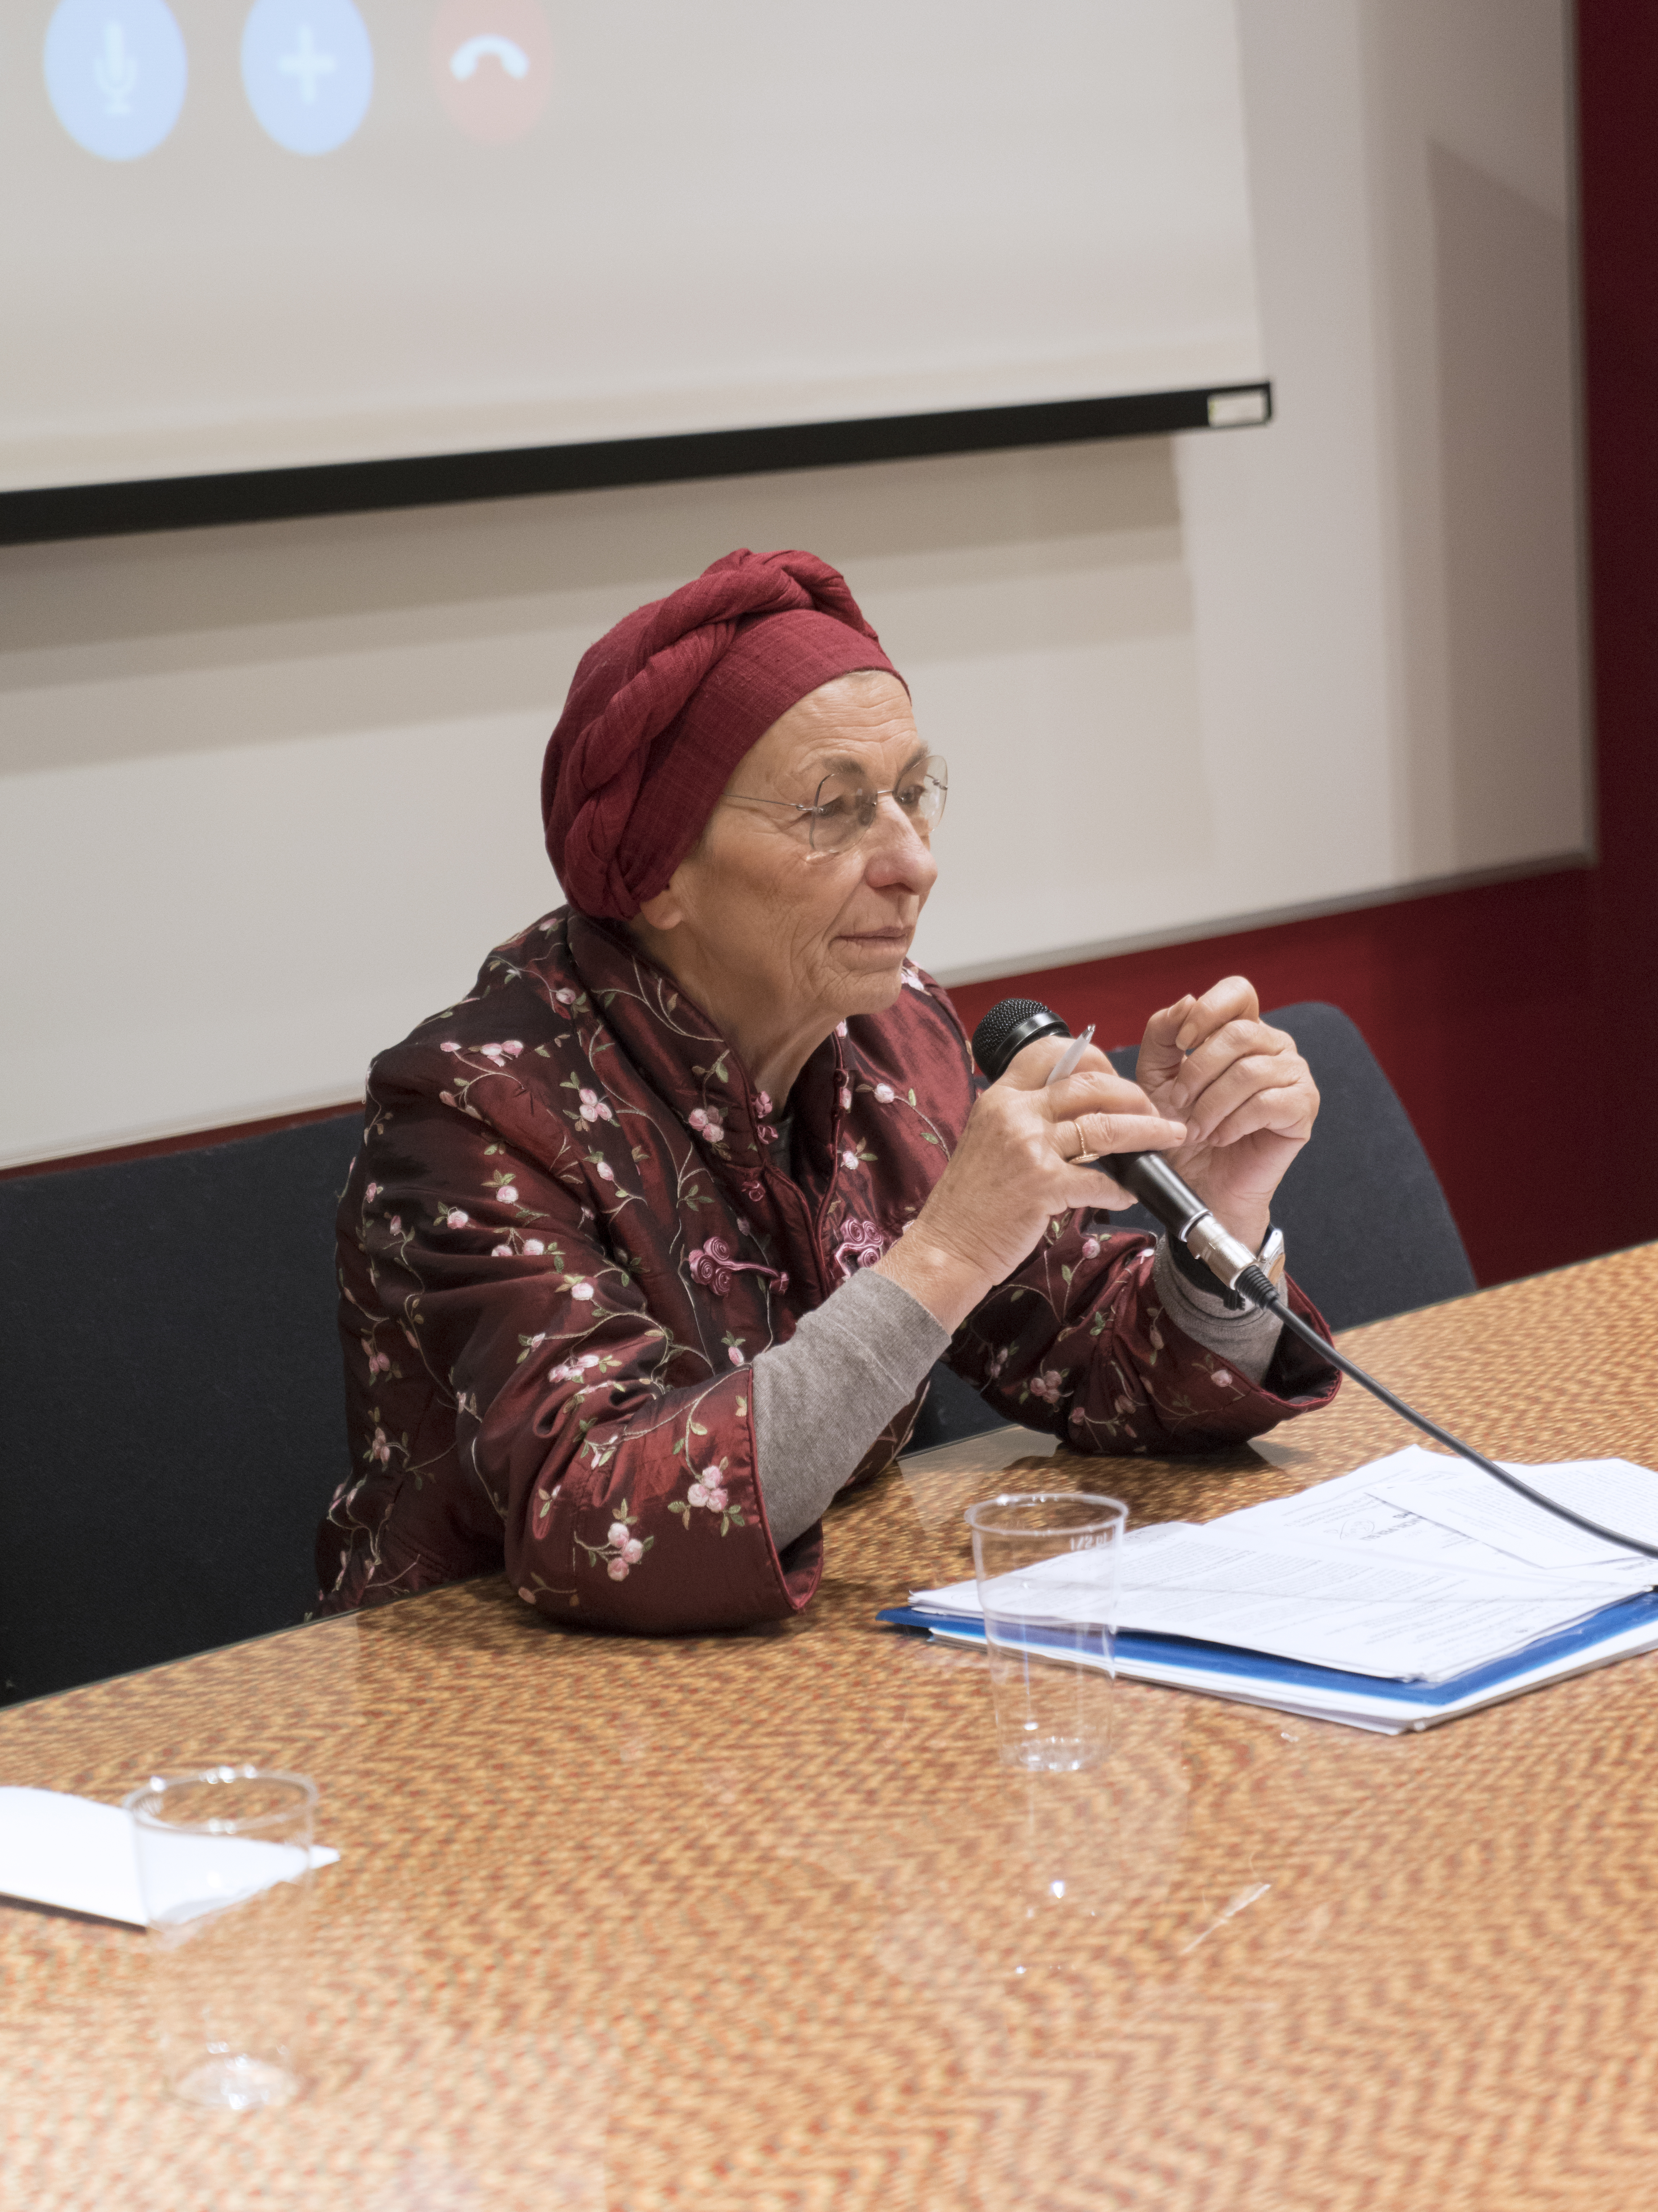 Emma Bonino a Cities for all. Foto: Fabrizio Albertini